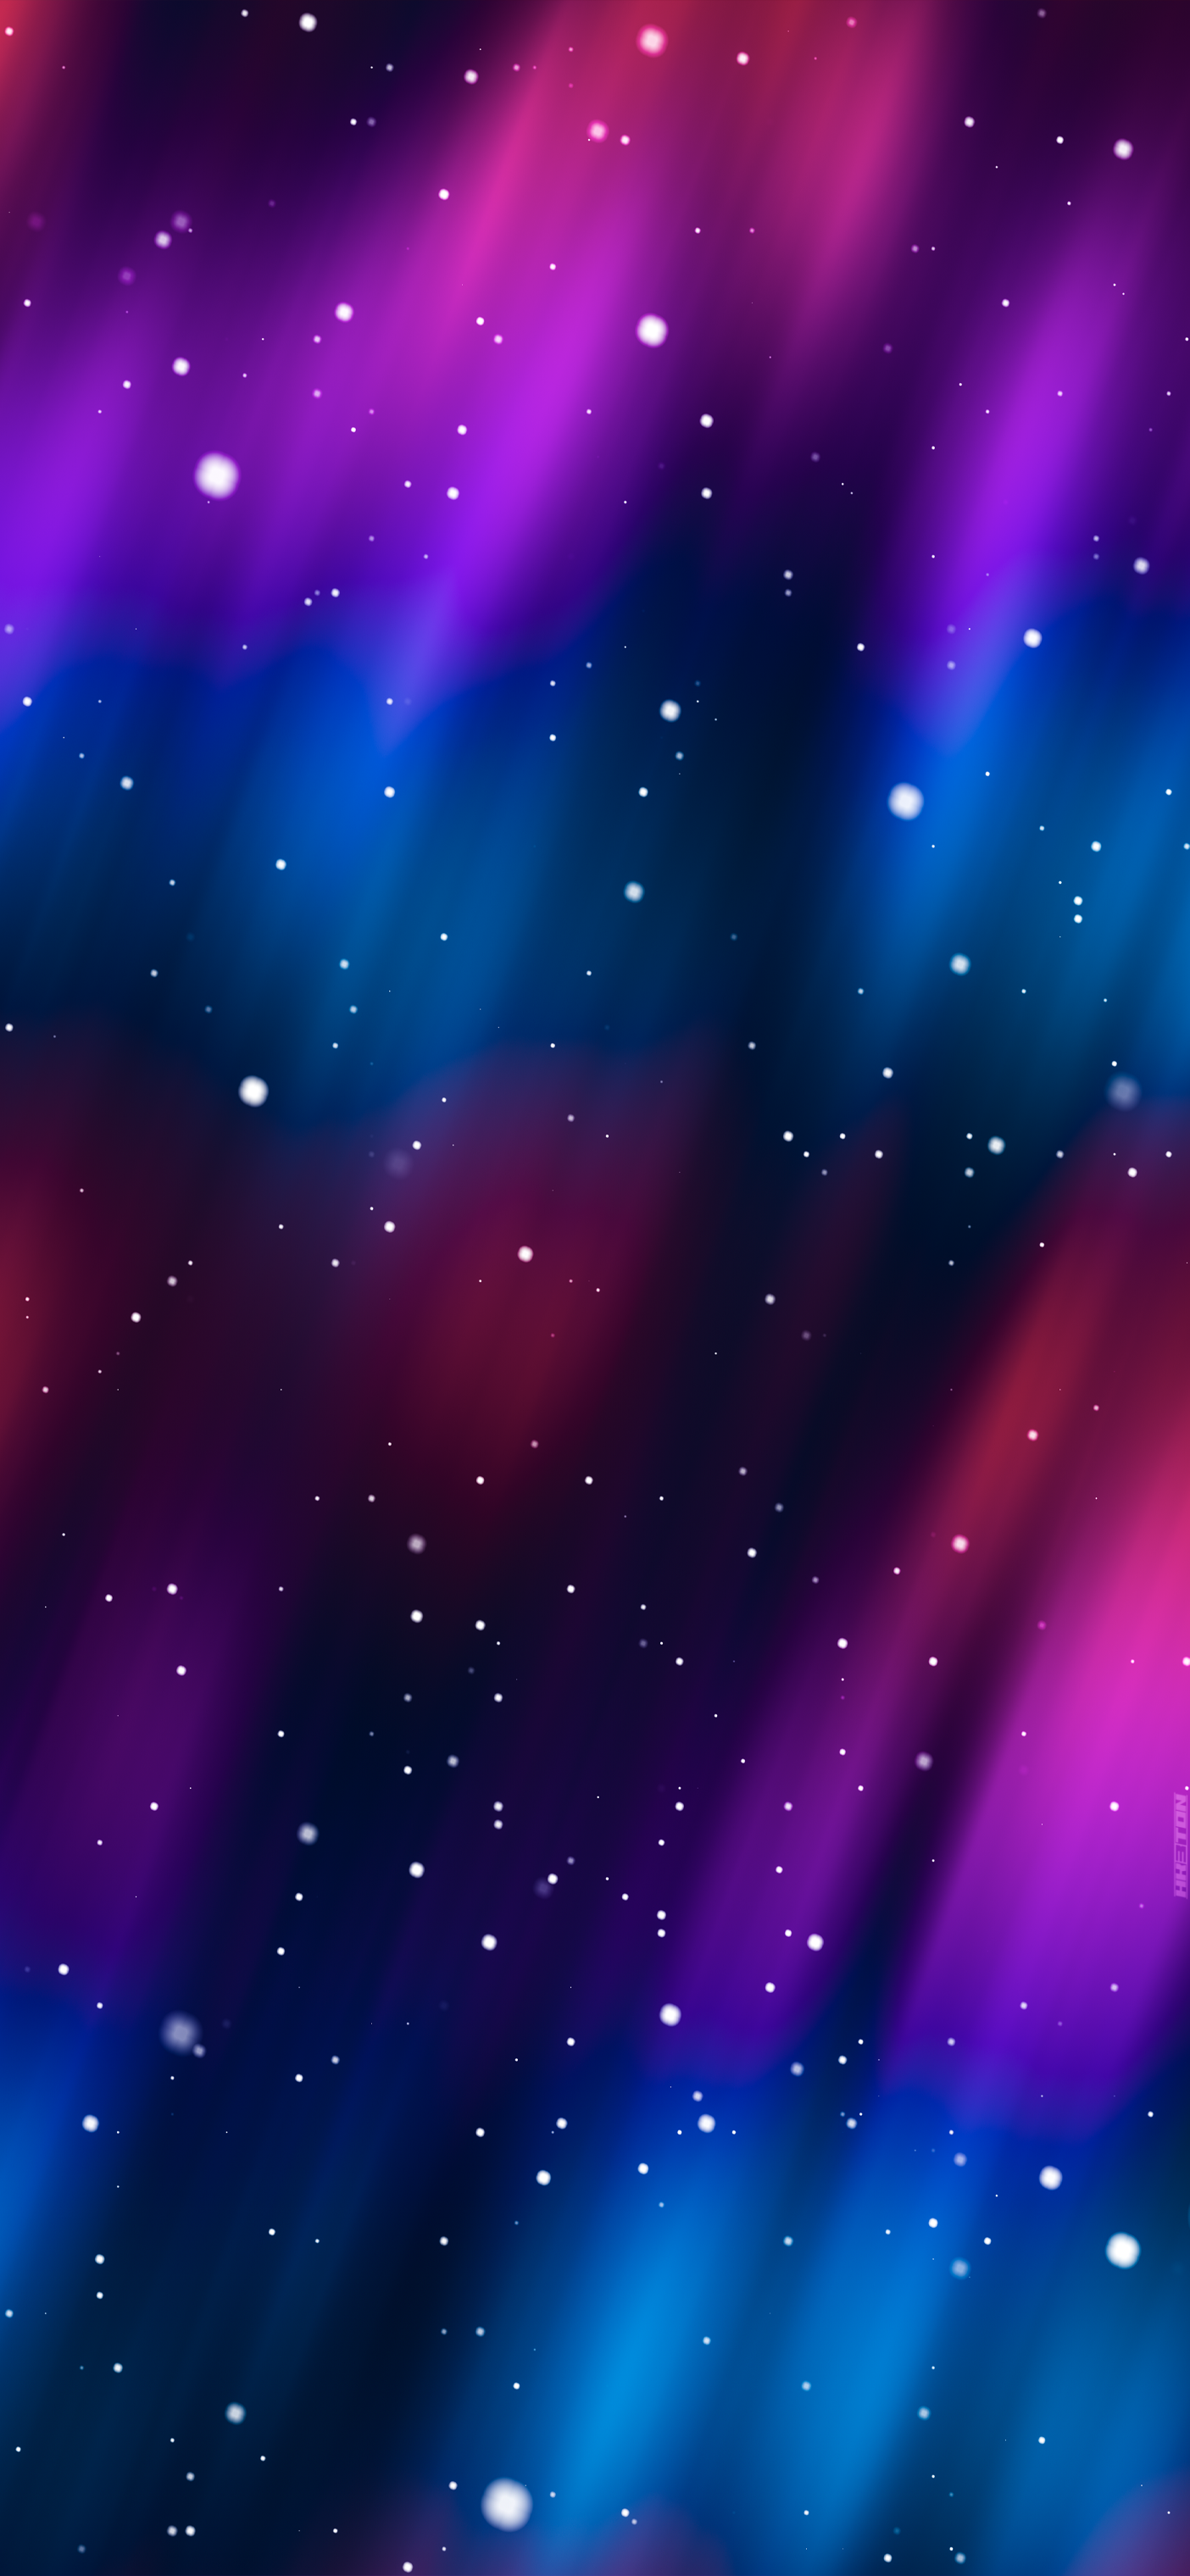 Deep Space nổi bật trên iOS 16: Trong số các bộ sưu tập hình nền phong cảnh trên iOS 16, Deep Space là một trong những bức ảnh ấn tượng nhất. Chiêm ngưỡng vẻ đẹp của vũ trụ và hòa mình vào không gian phiêu lưu vô cùng thú vị. Hãy tải ngay hình nền này cho tiện thoại của mình để trở thành người đầu tiên sở hữu!